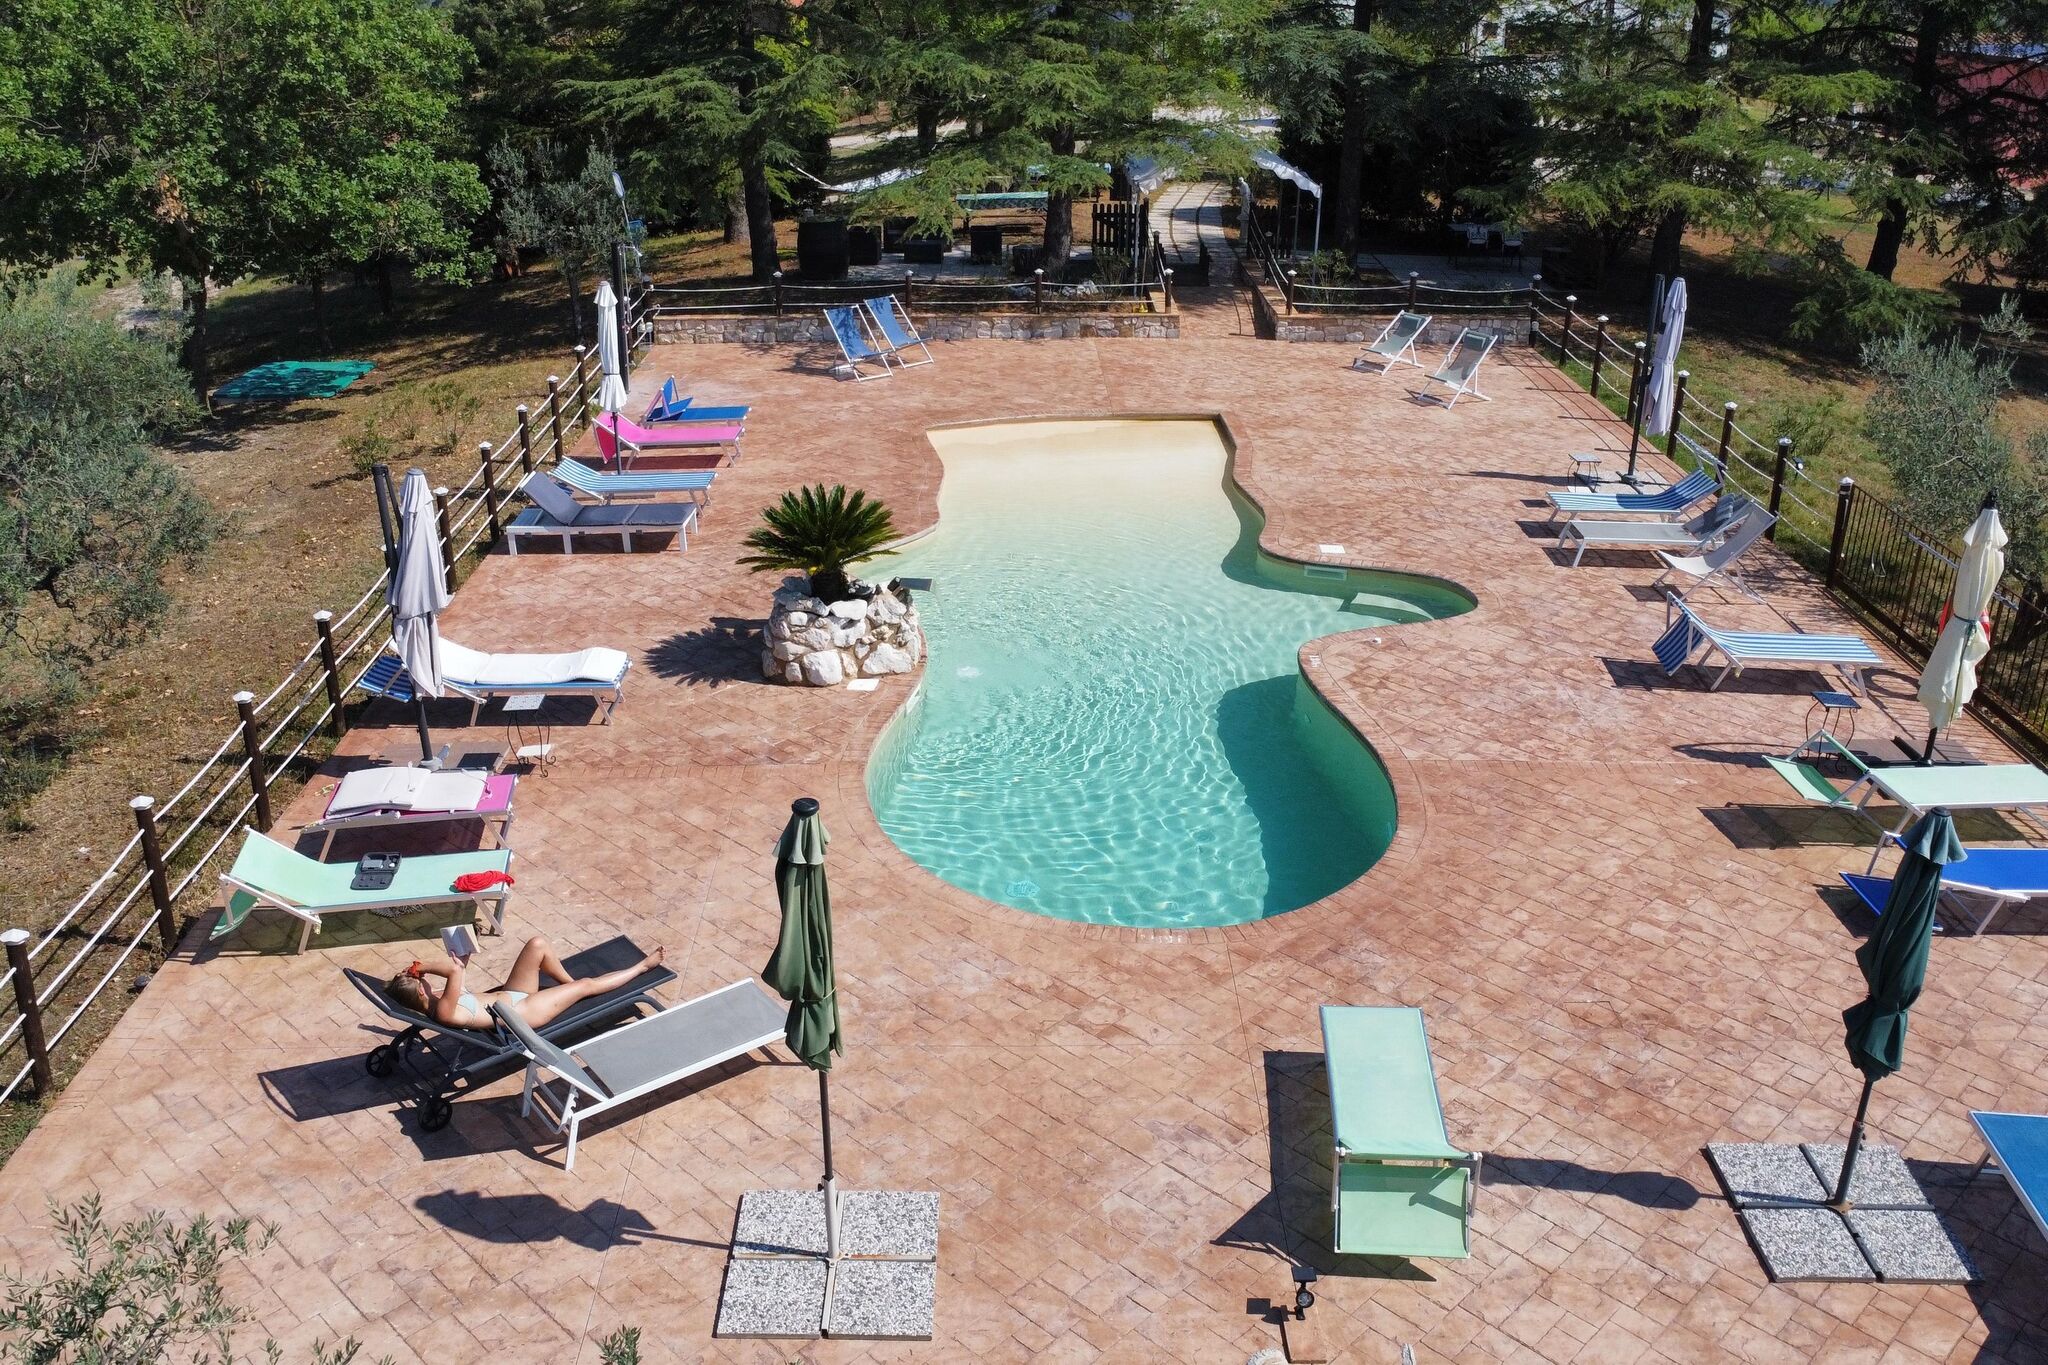 Ferme pittoresque à Spolète avec piscine extérieure